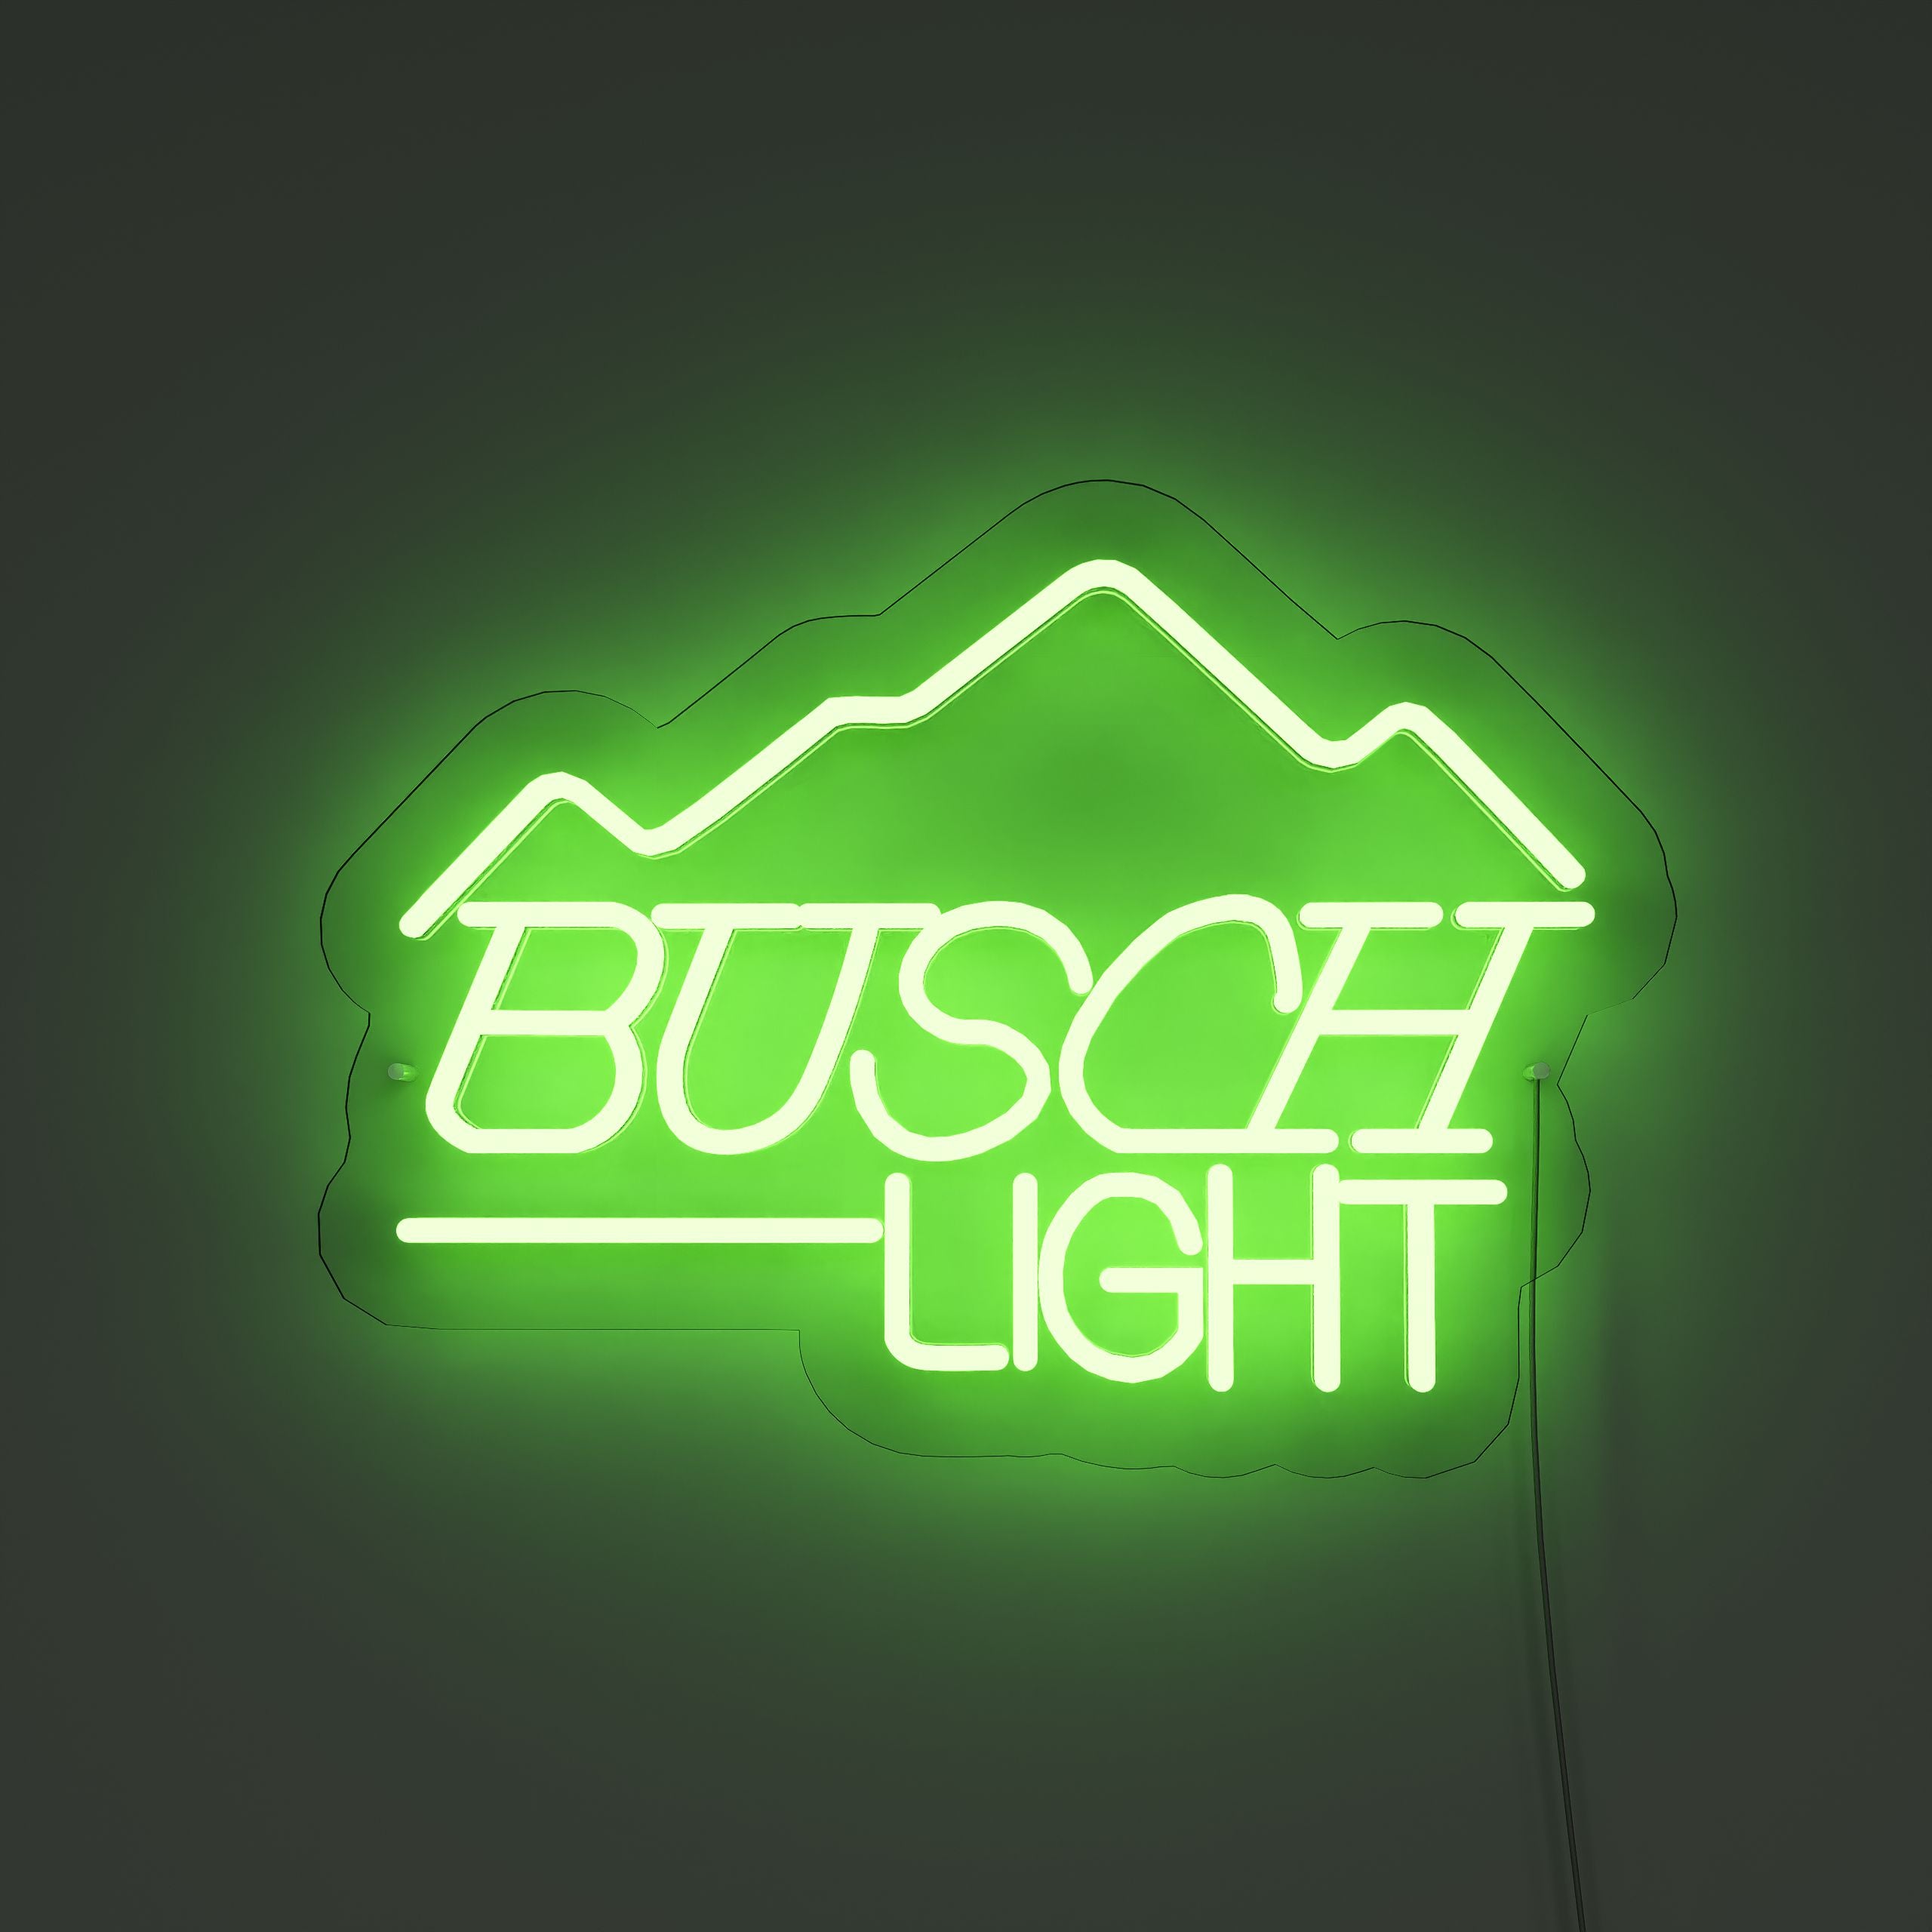 fbusch-light-neon-signs-ForestGreer-Neon-sign-Lite